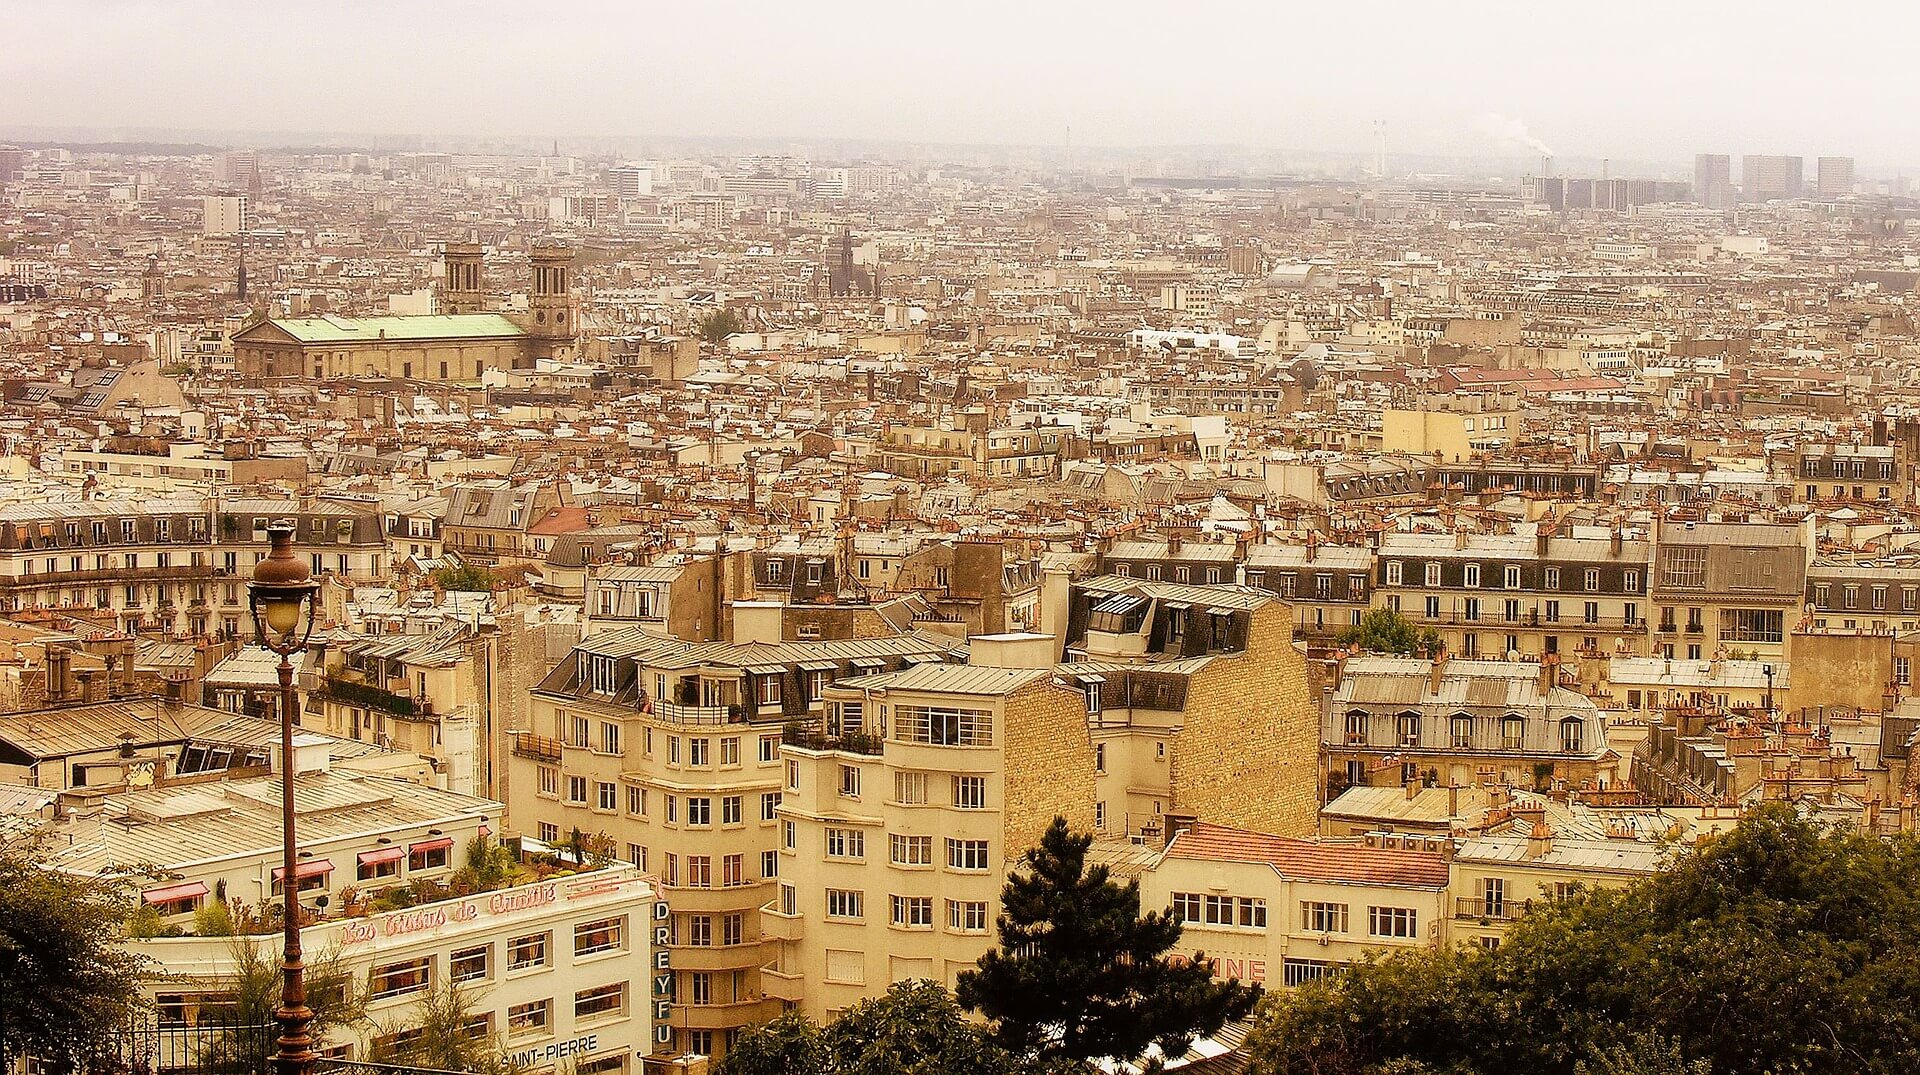 Encadrement des loyers à Paris : Impact mesuré